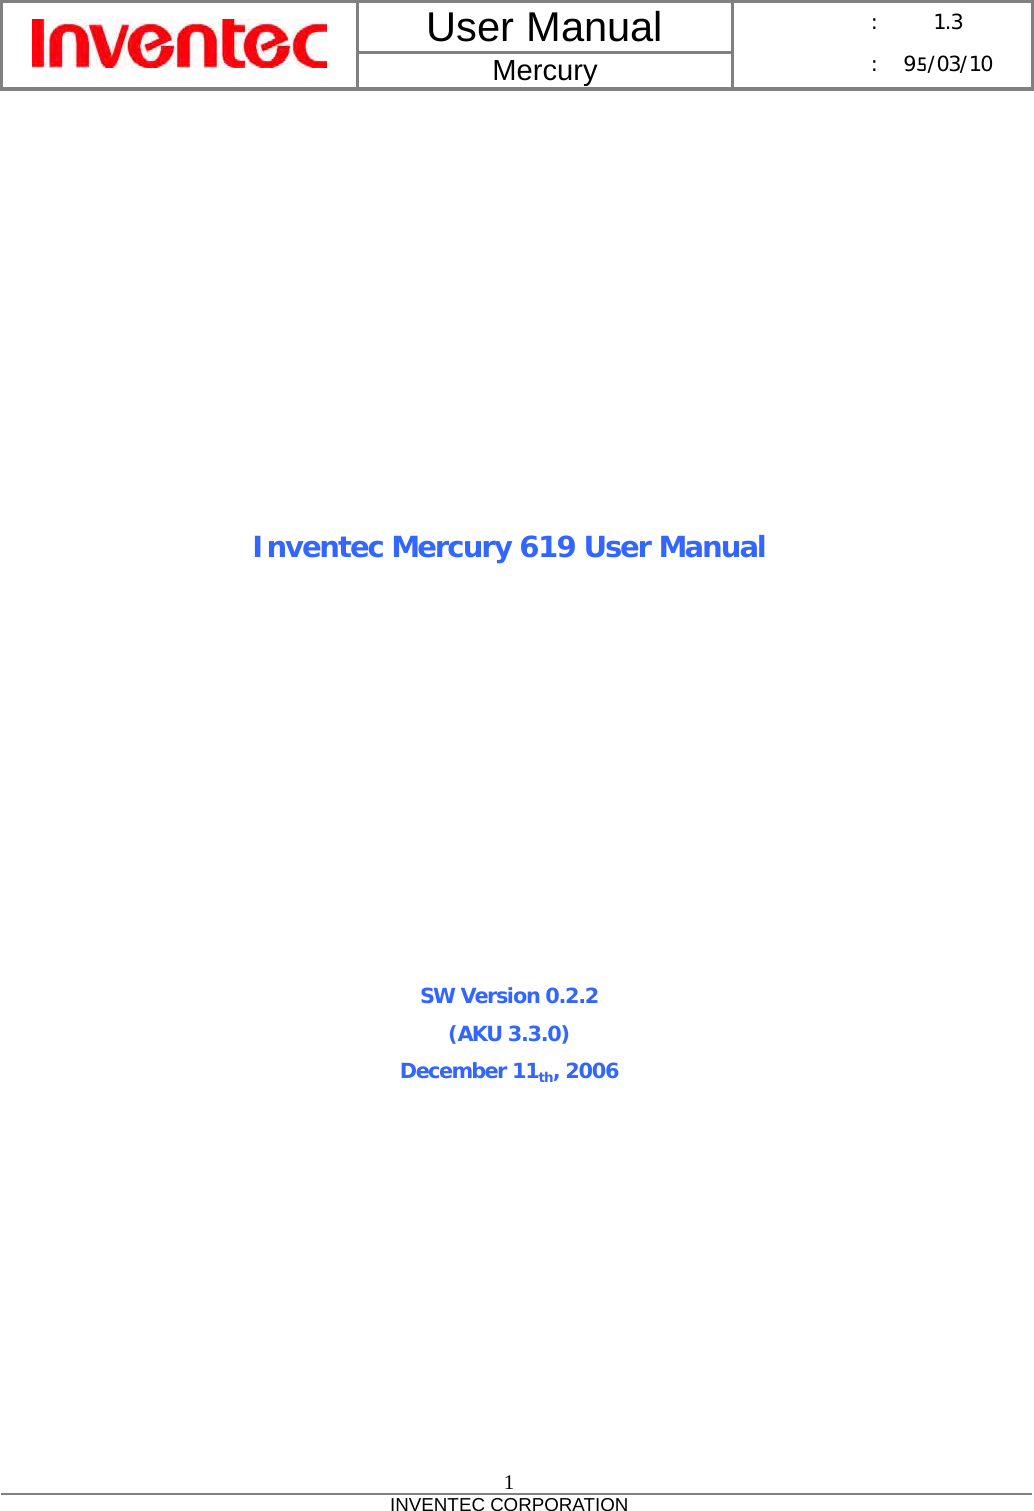 User Manual  Mercury      :  1.3      : 95/03/10  1 INVENTEC CORPORATION              Inventec Mercury 619 User Manual            SW Version 0.2.2 (AKU 3.3.0) December 11th, 2006 